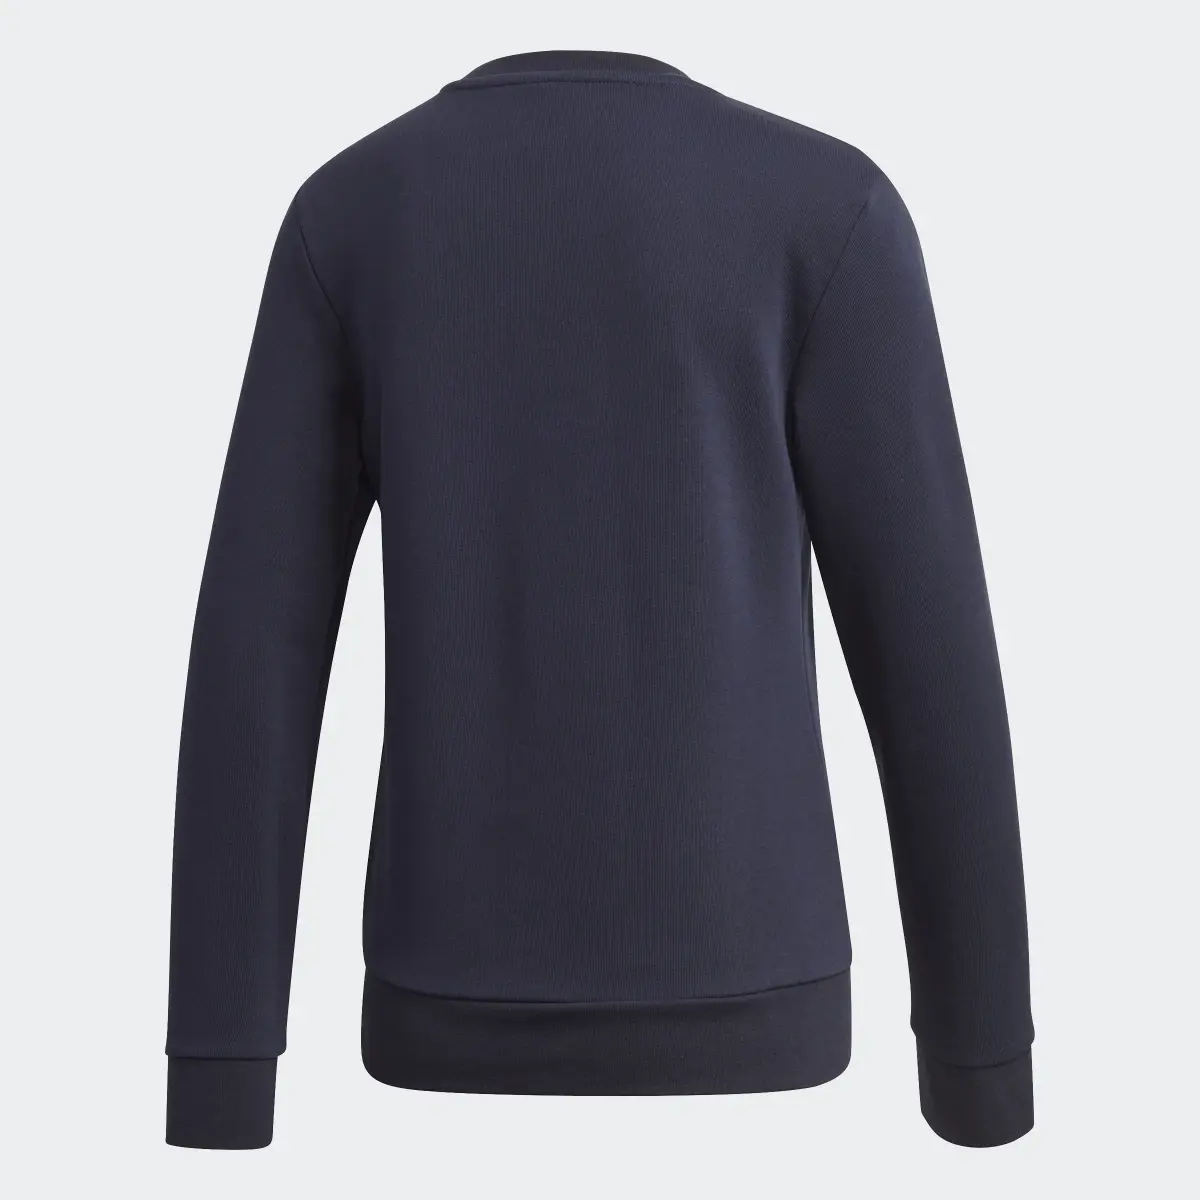 Adidas Essentials Linear Sweatshirt. 2